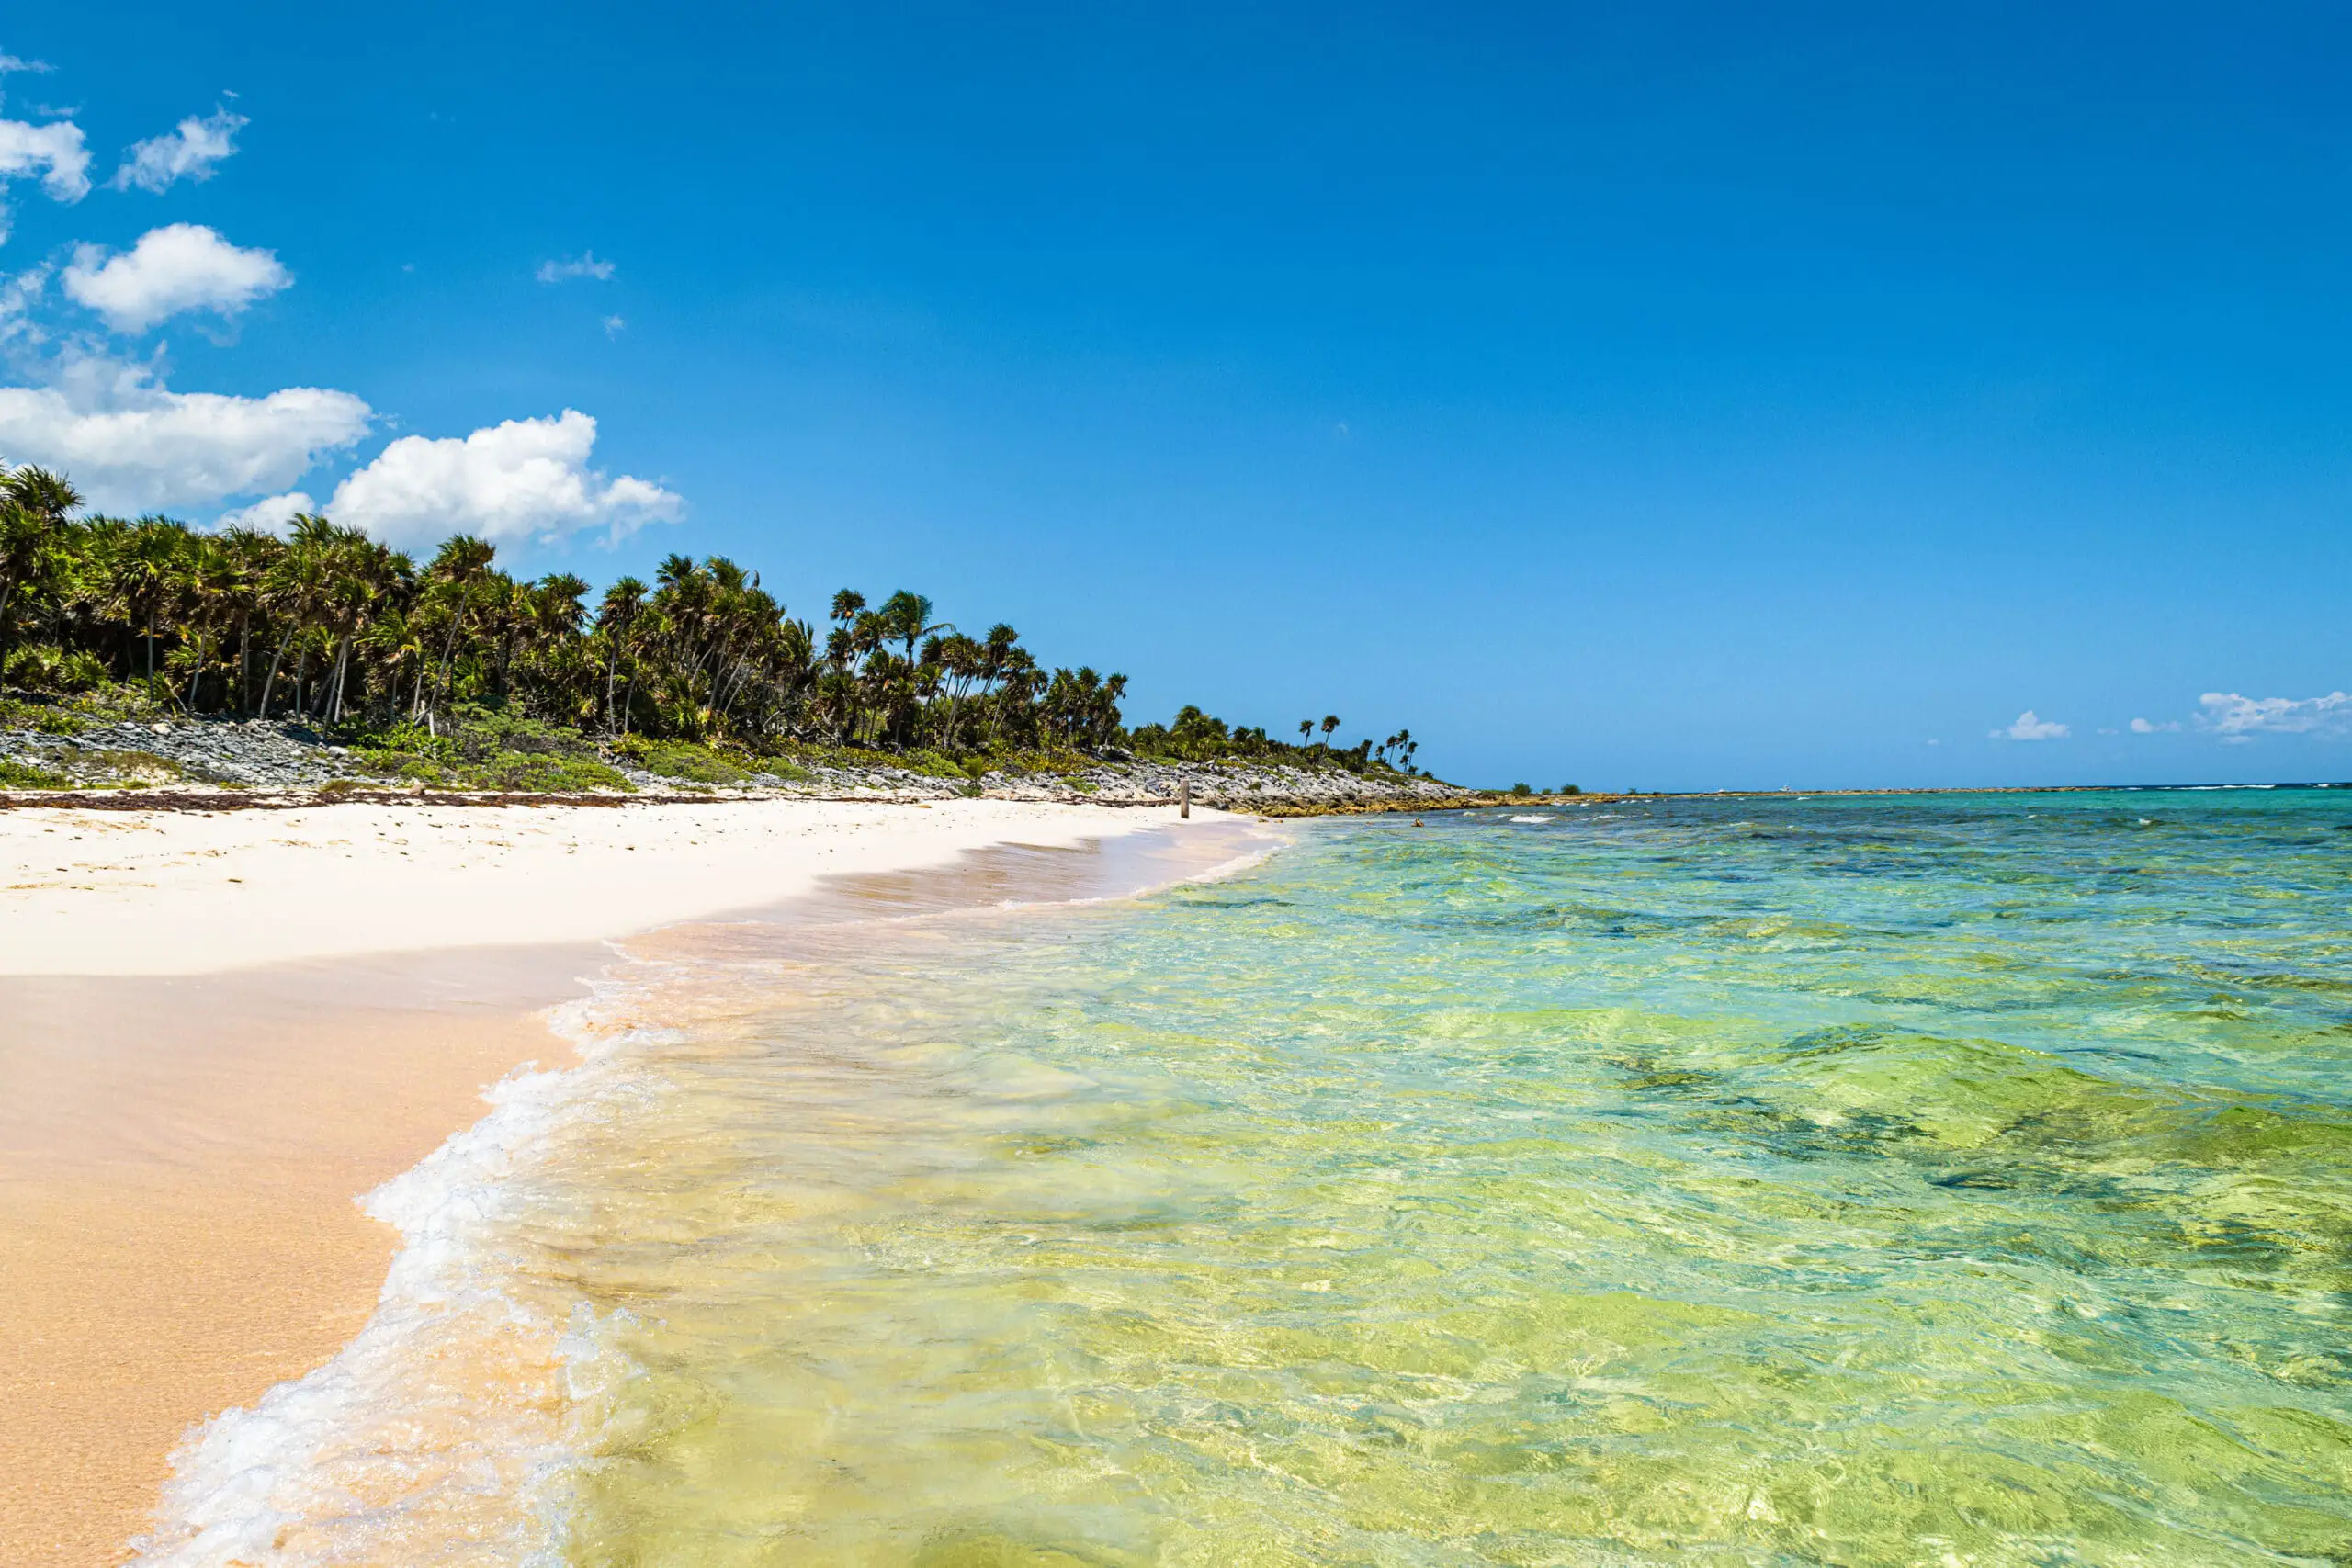 Tropical Xcacel beach on the Caribbean Sea coast